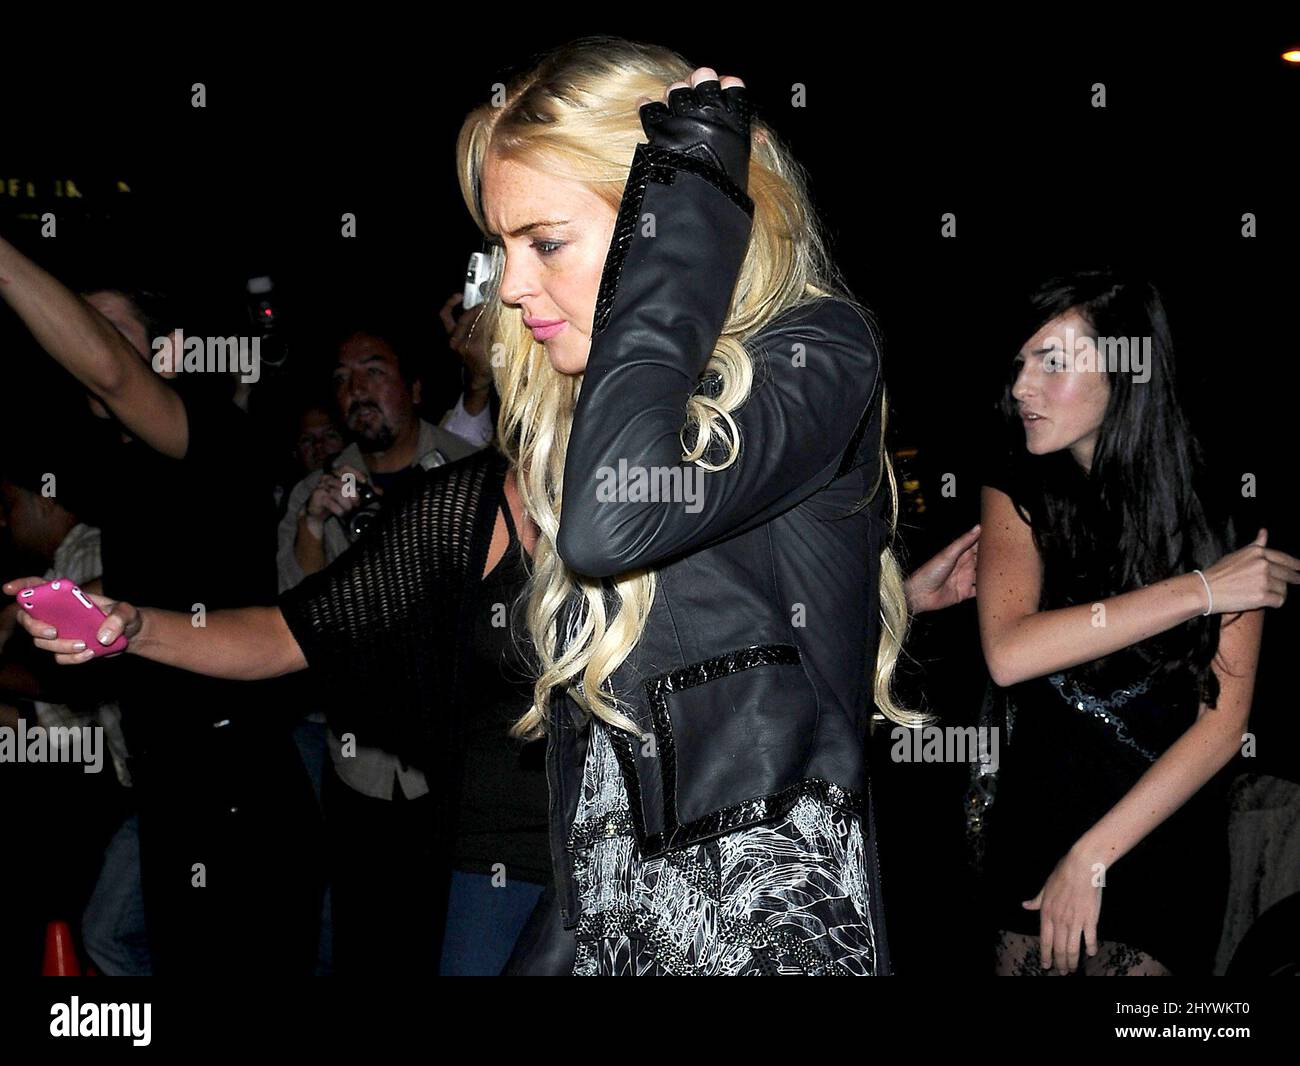 Lindsay Lohan partecipa al Pop-Up Shop Party presso il negozio di navi ammirate Revolve, California Foto Stock